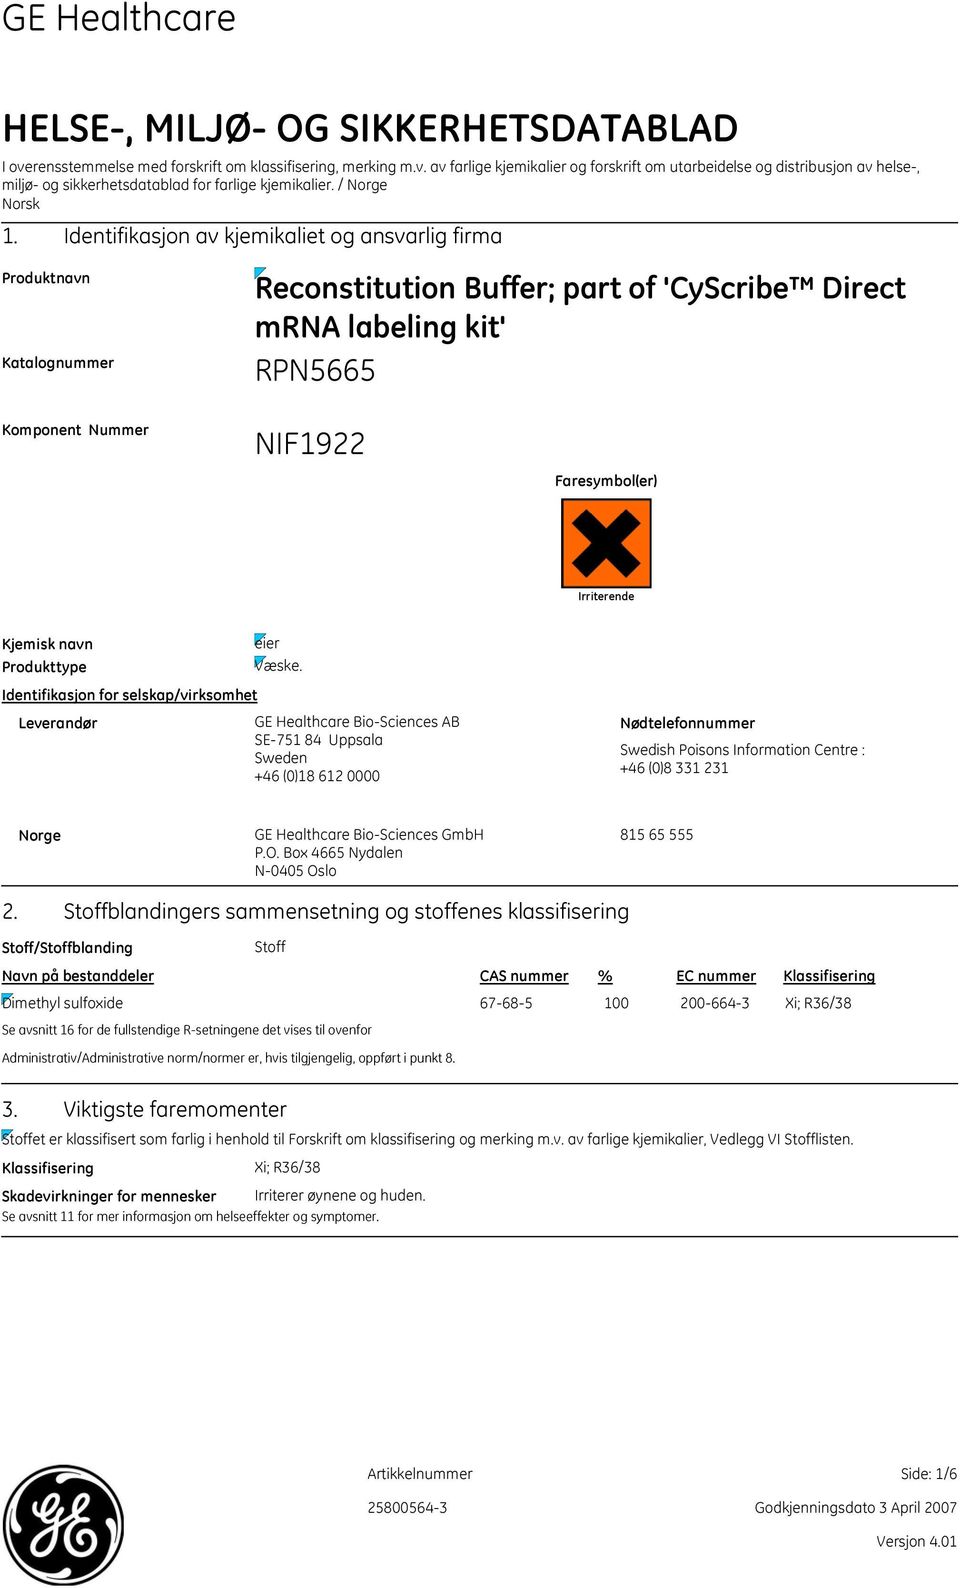 Identifikasjon av kjemikaliet og ansvarlig firma Produktnavn Katalognummer Reconstitution Buffer; part of 'CyScribe Direct mrna labeling kit' Komponent Nummer NIF1922 Faresymbol(er) Irriterende